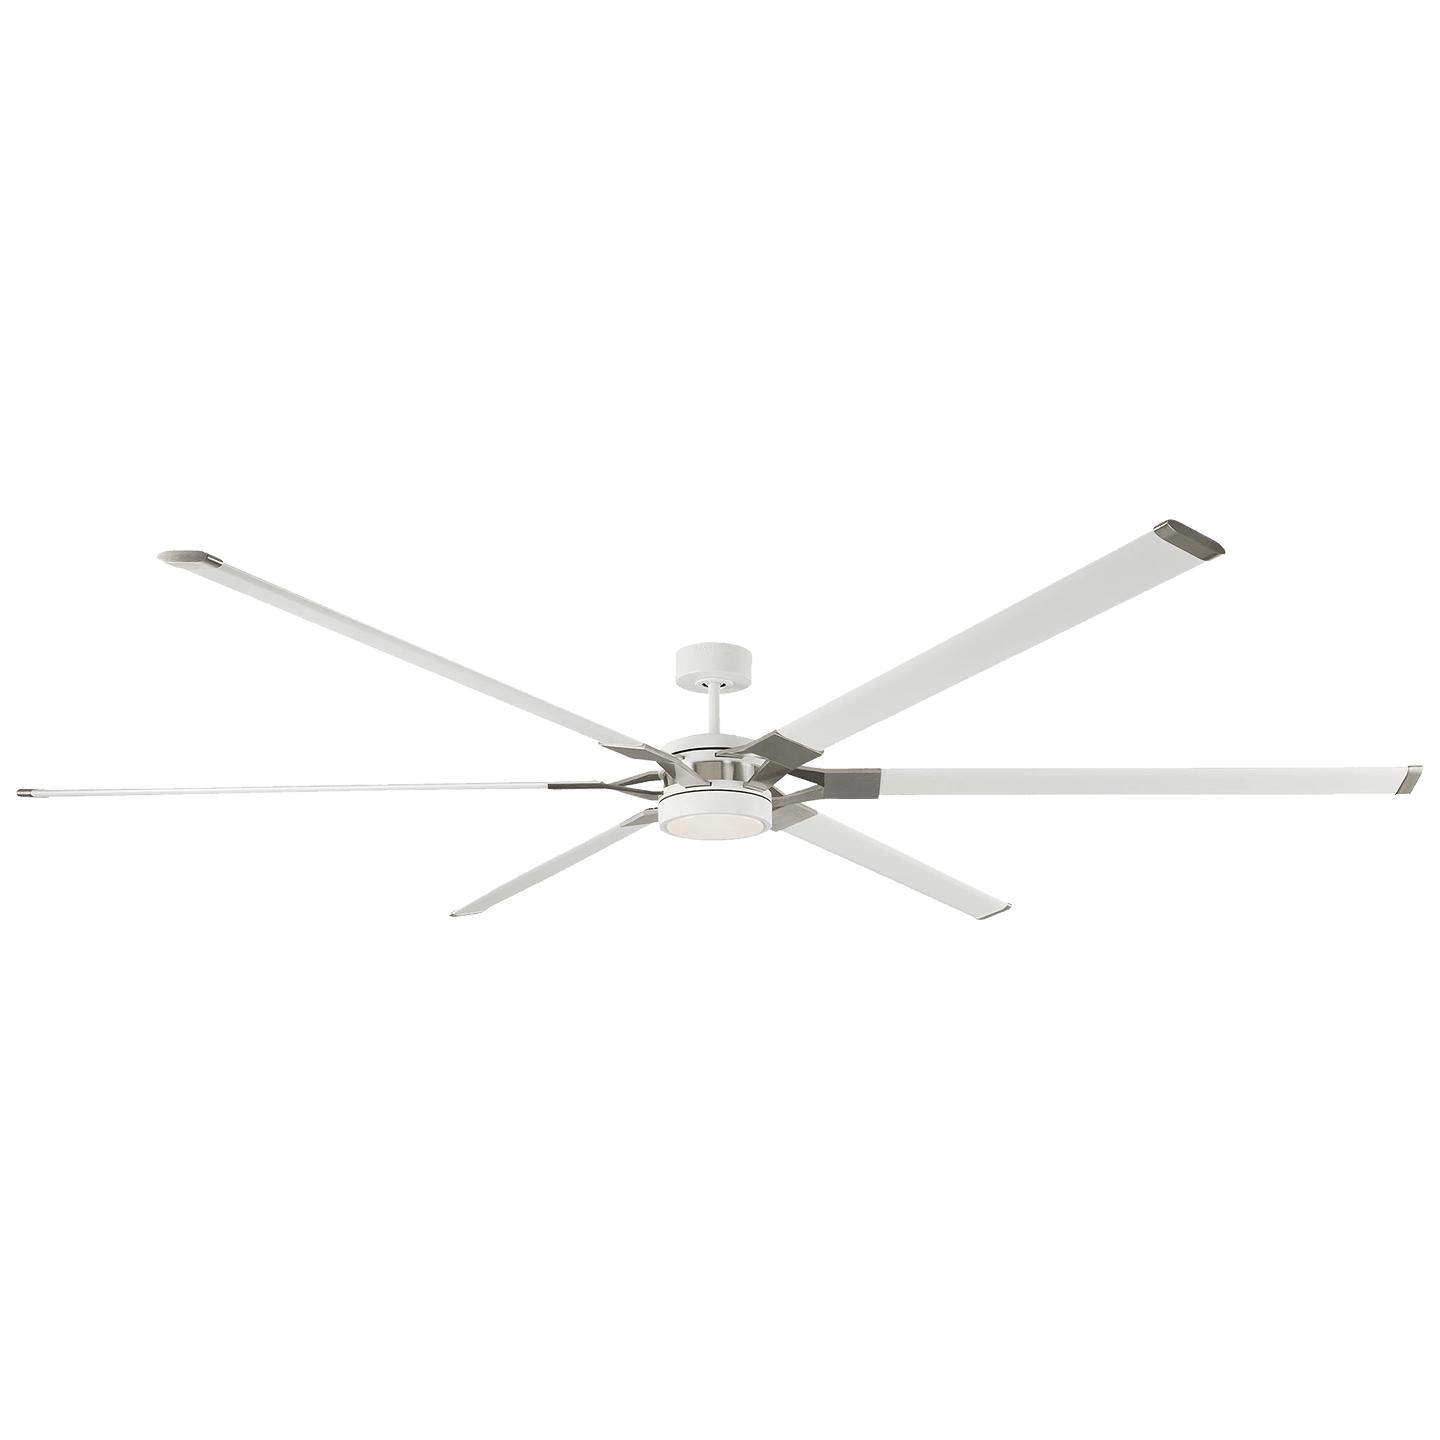 Купить Потолочный вентилятор Loft 96" Ceiling Fan в интернет-магазине roooms.ru